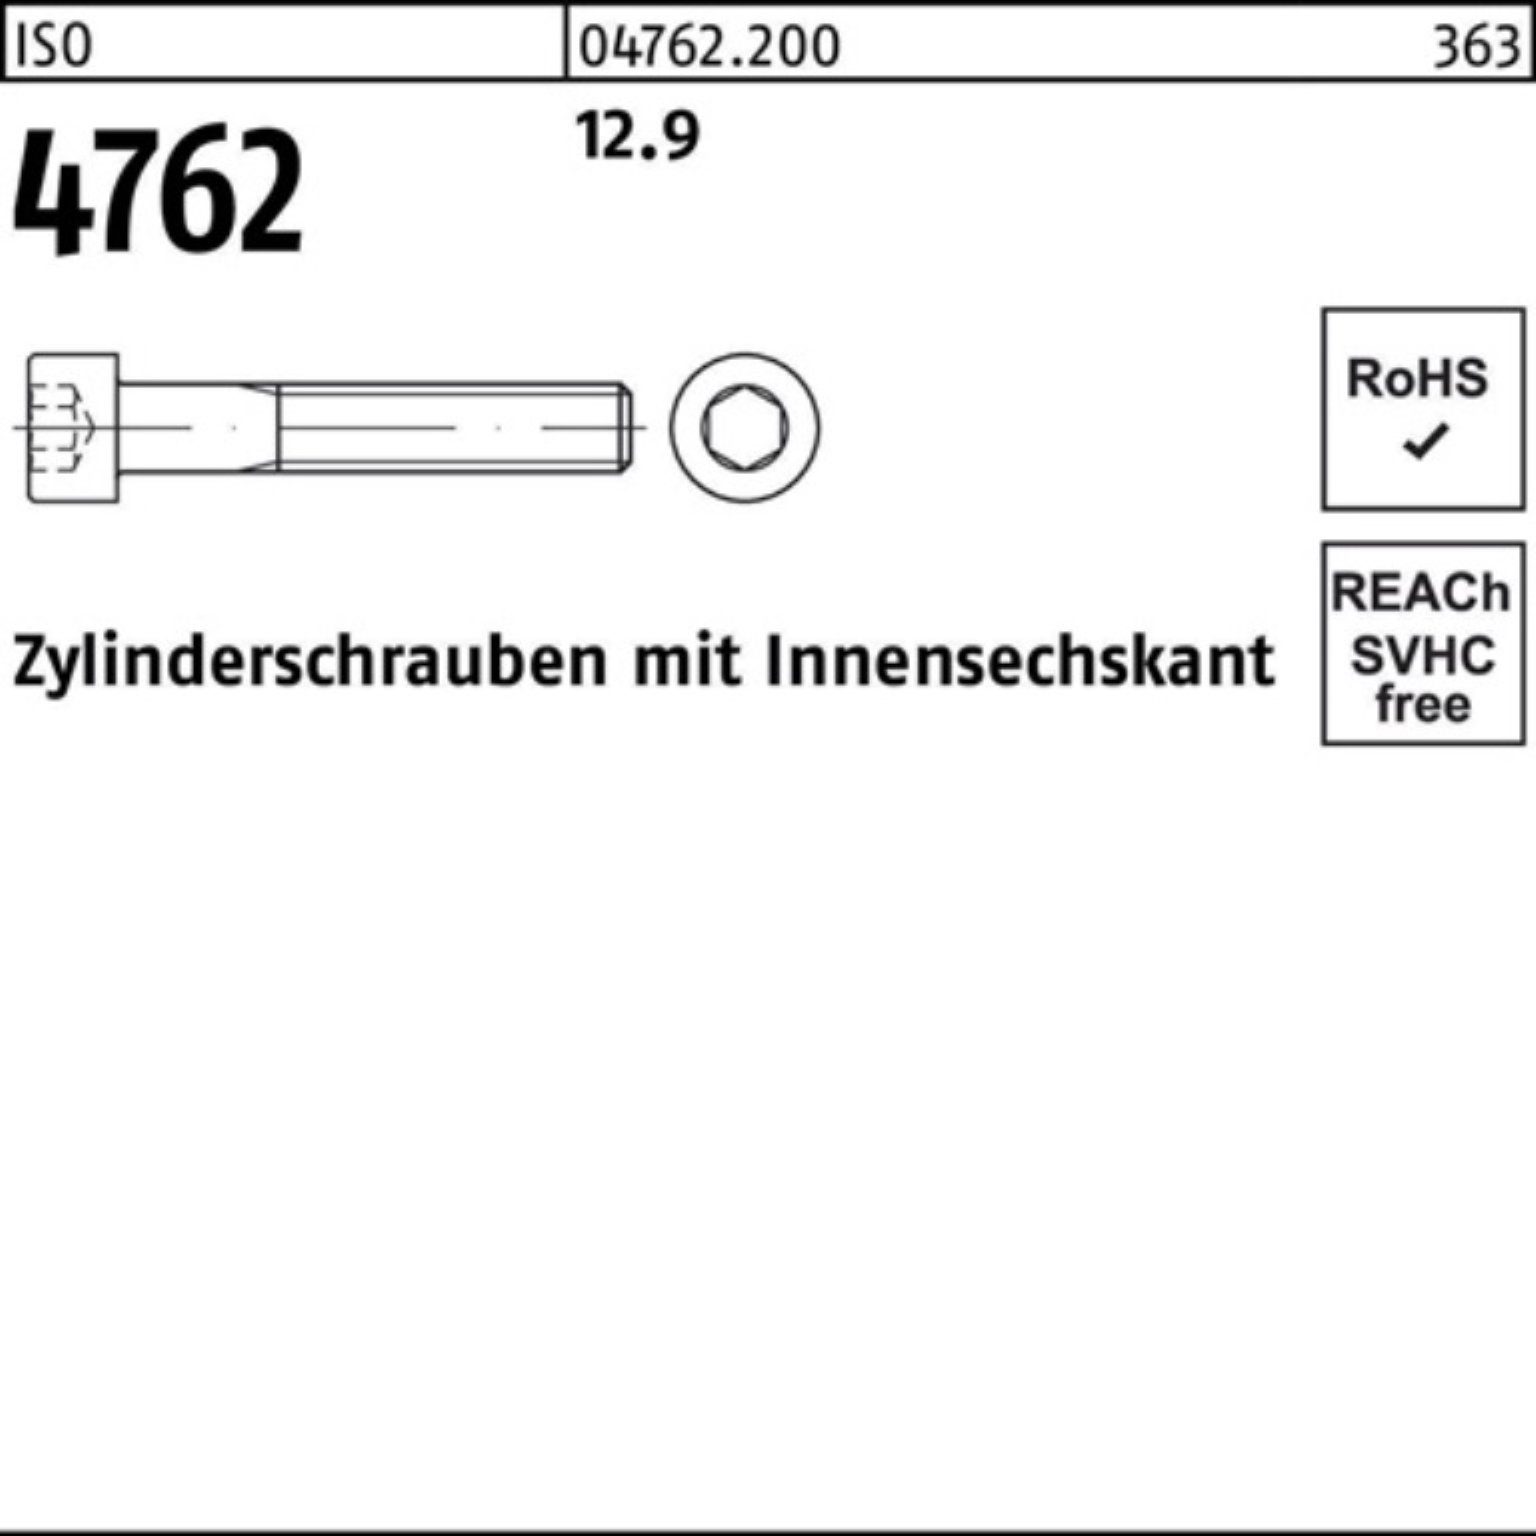 ISO 200er Zylinderschraube Stück 12.9 200 Reyher M4x 80 Pack Innen-6kt Zylinderschraube 4762